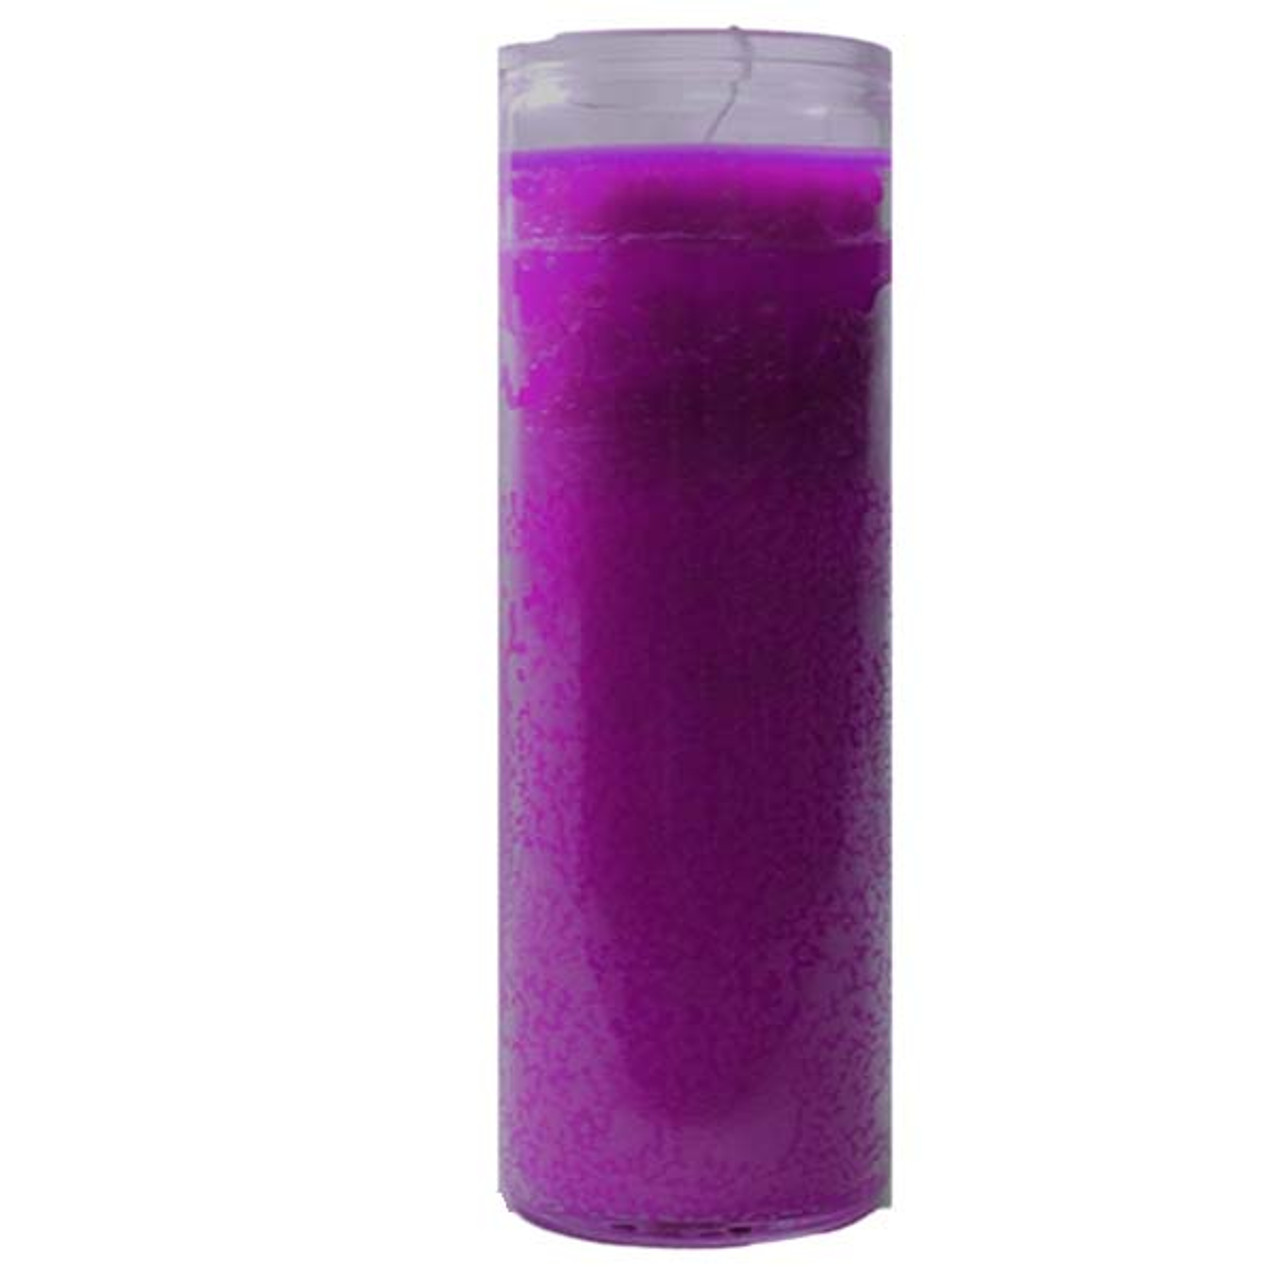 7 Day Plain Candle  Purple - Veladora Plain 7 Dias Morada